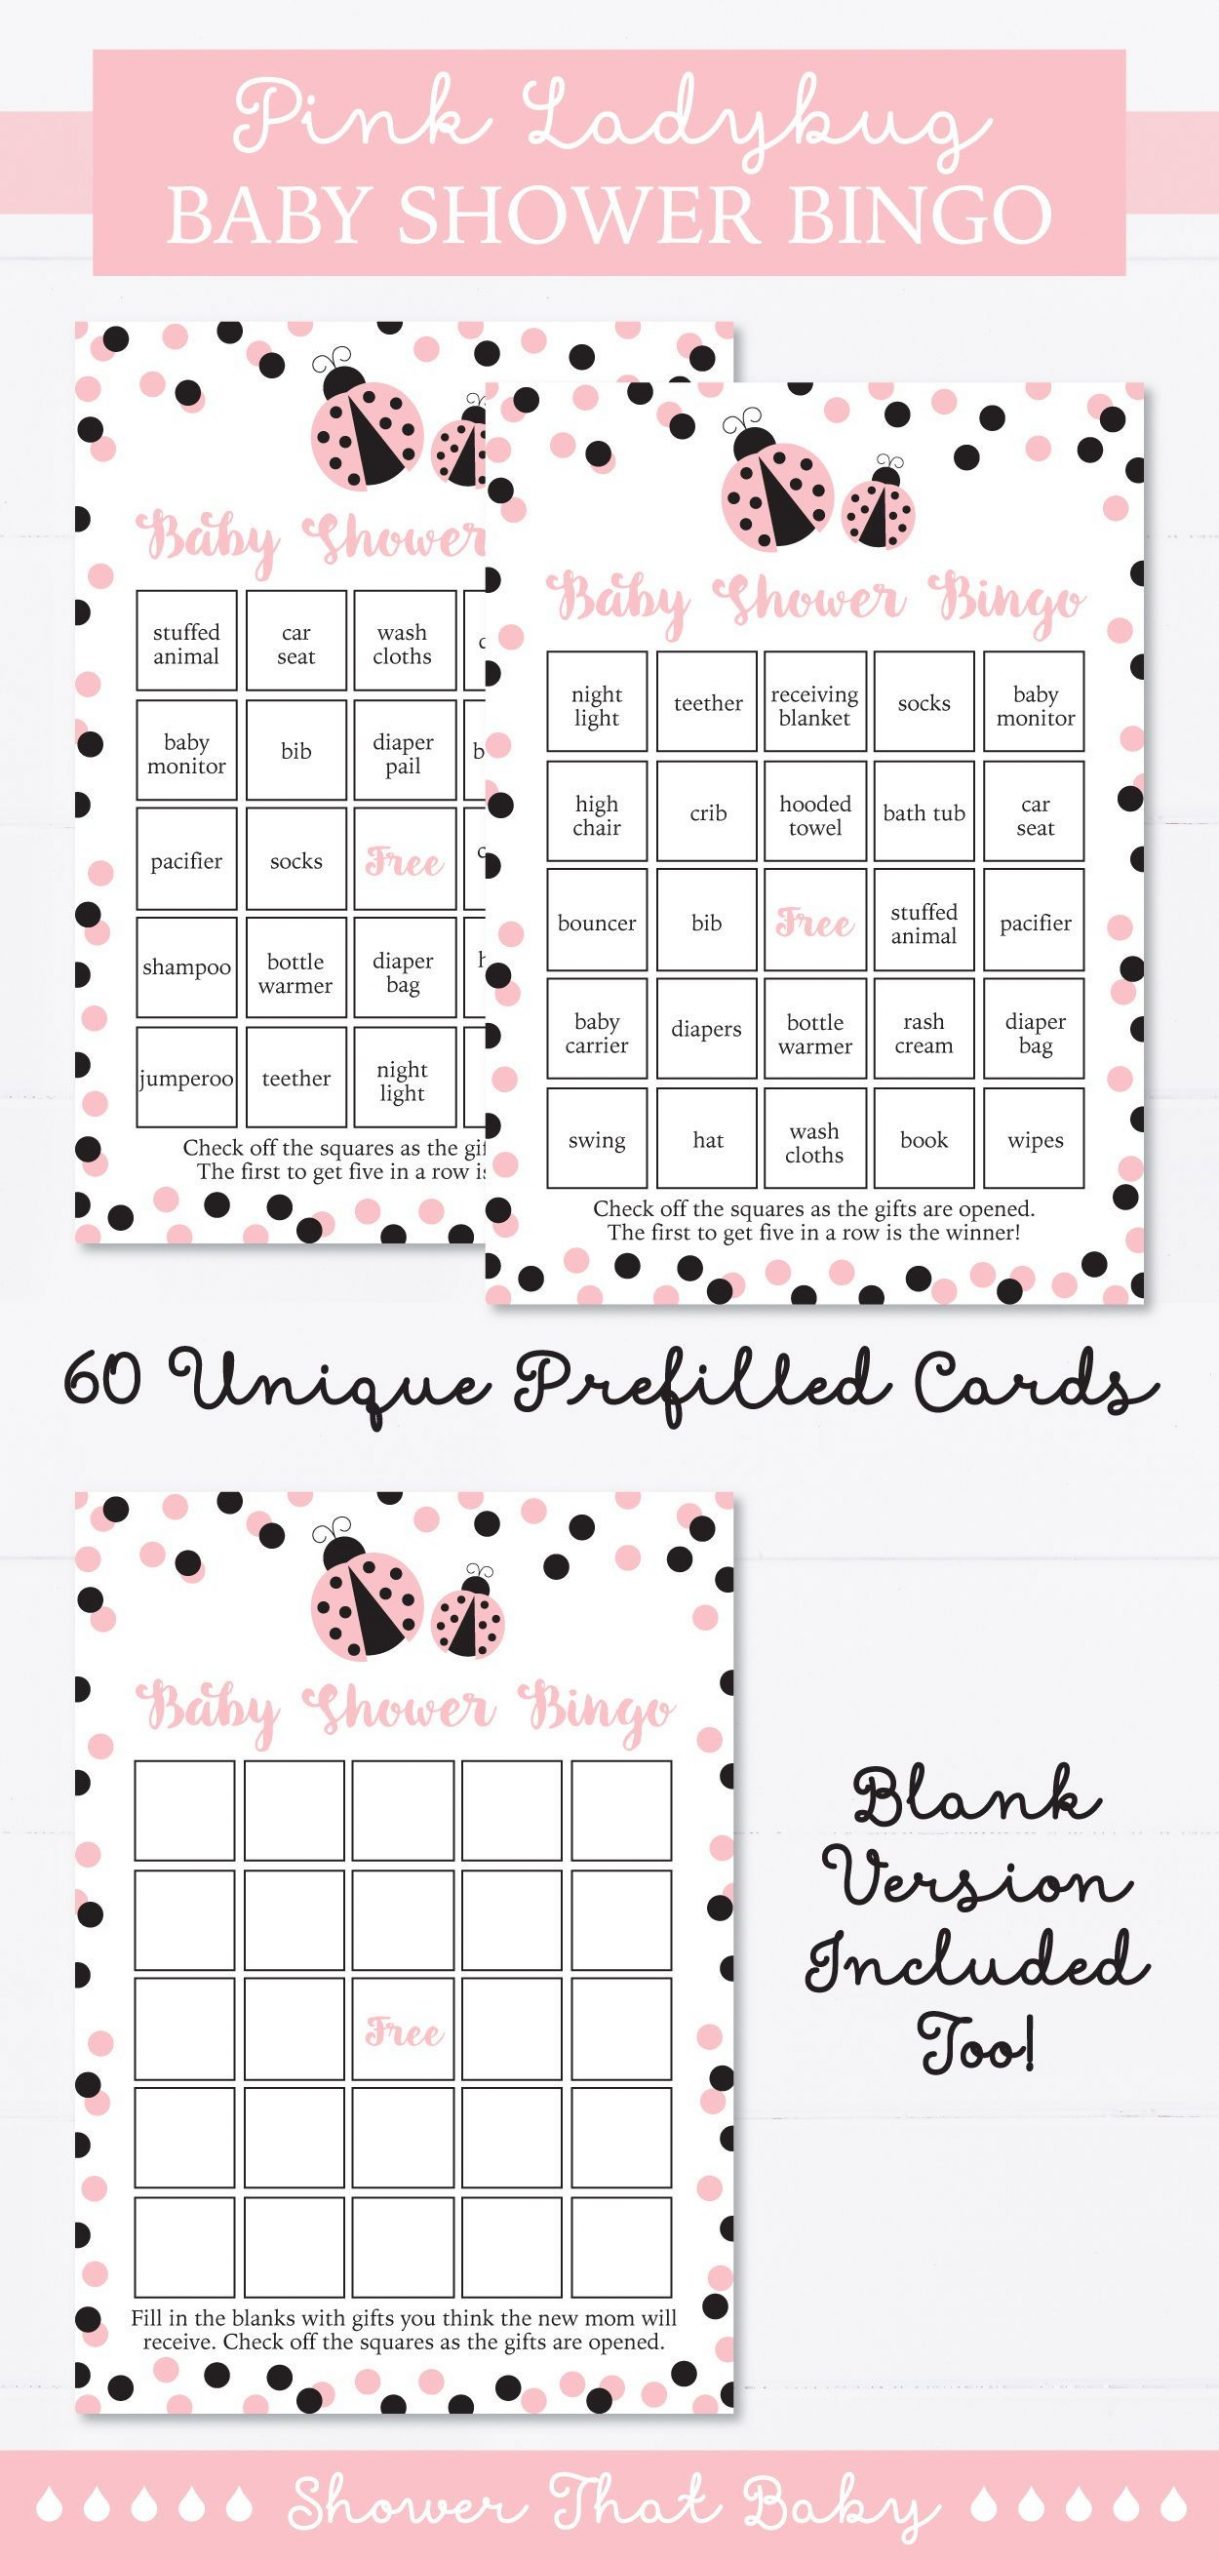 Ladybug Baby Shower Bingo Cards - Printable Blank Bingo